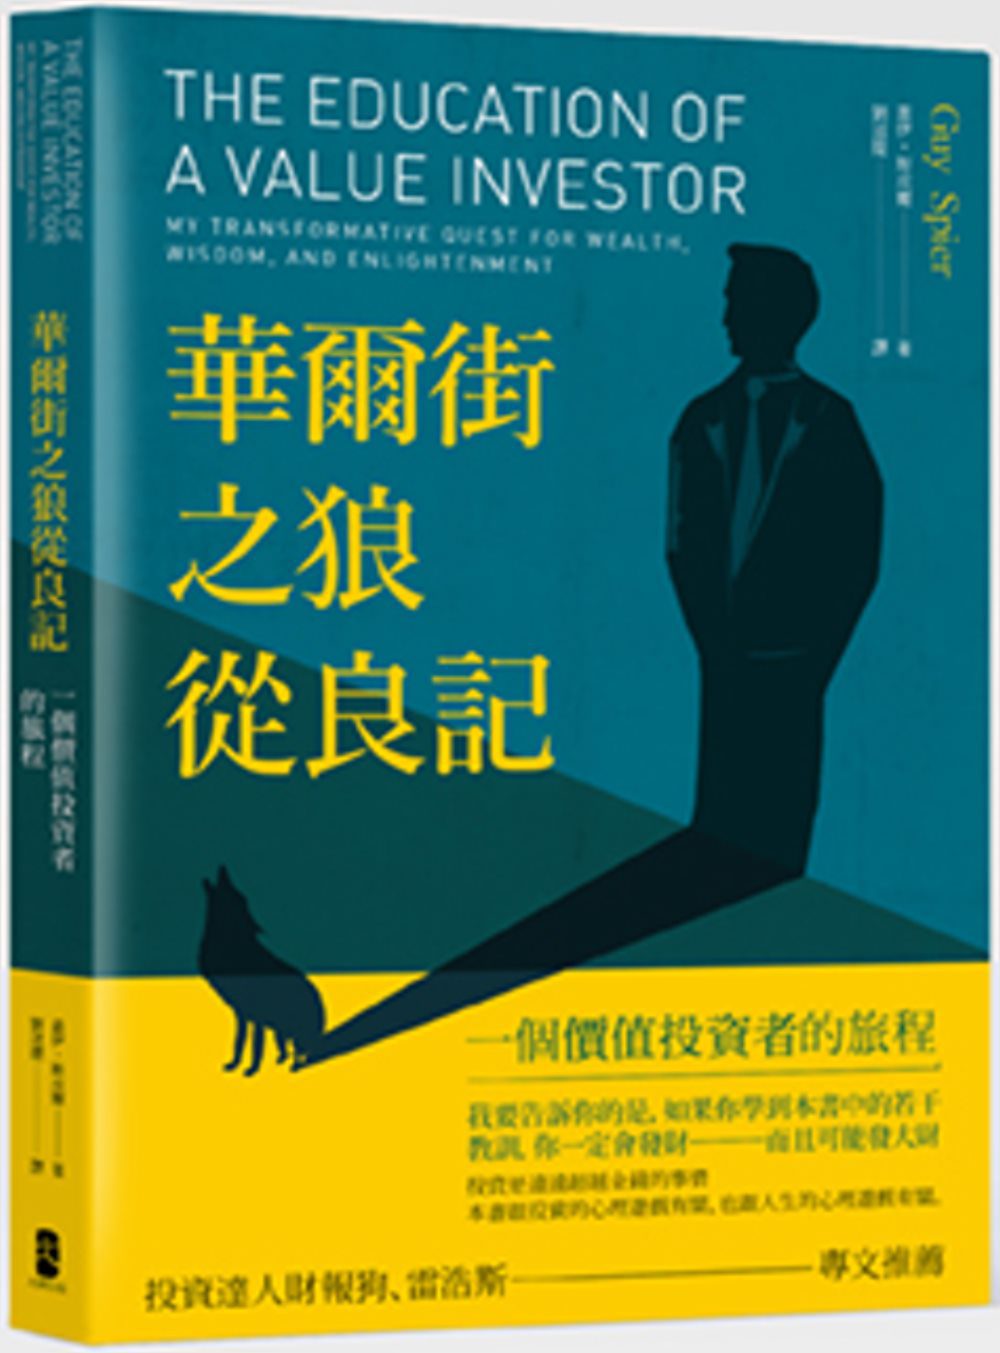 華爾街之狼從良記：一個價值投資者的旅程